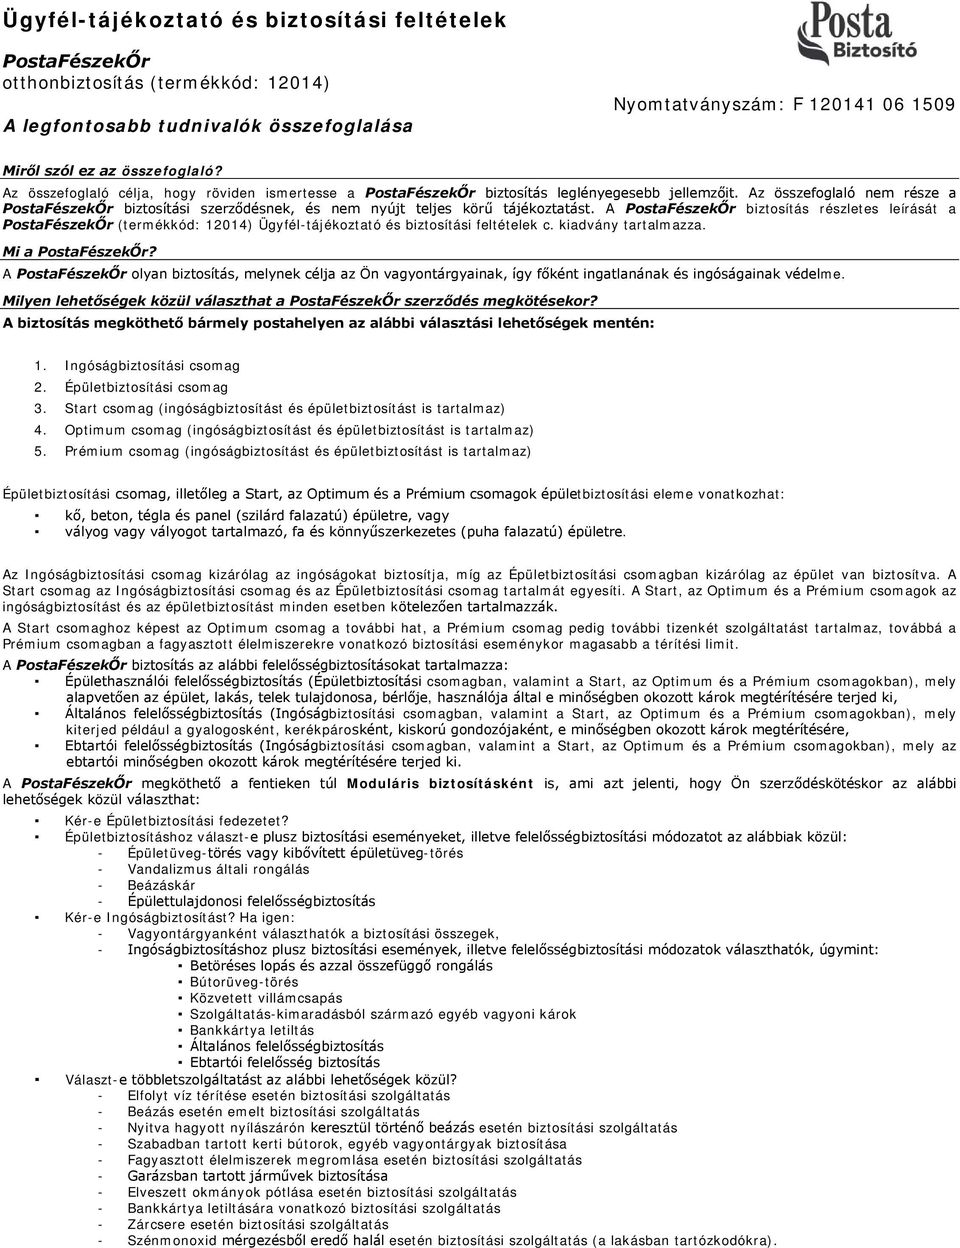 Ügyfél-tájékoztató és biztosítási feltételek - PDF Ingyenes letöltés